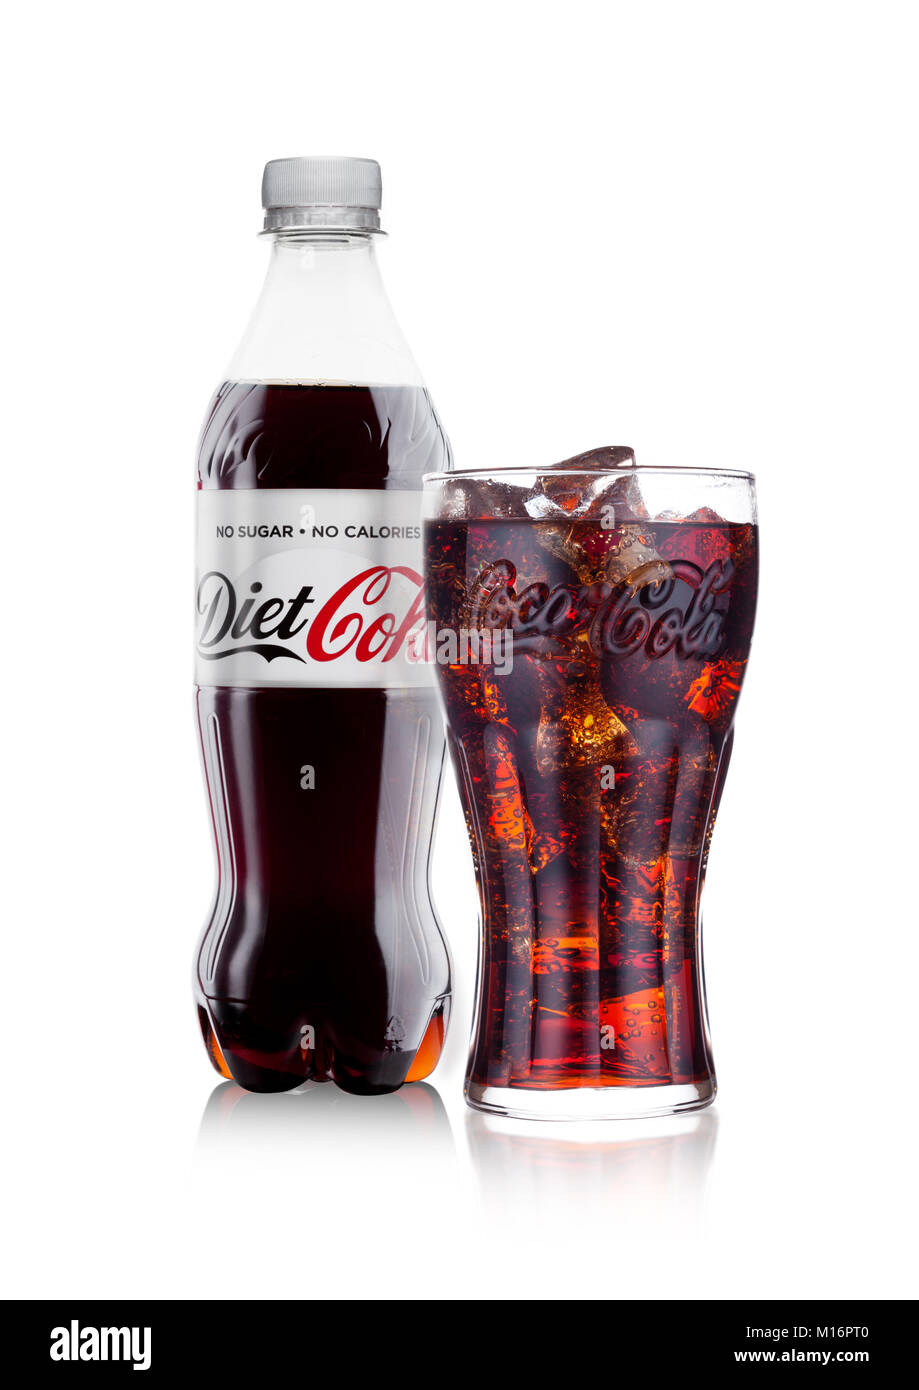 LONDON, UK, 24. JANUAR 2018: Flasche und Glas Diät Coca-Cola auf weißem Hintergrund. Coca-Cola ist einer der beliebtesten Soda Produkte in der Welt Stockfoto